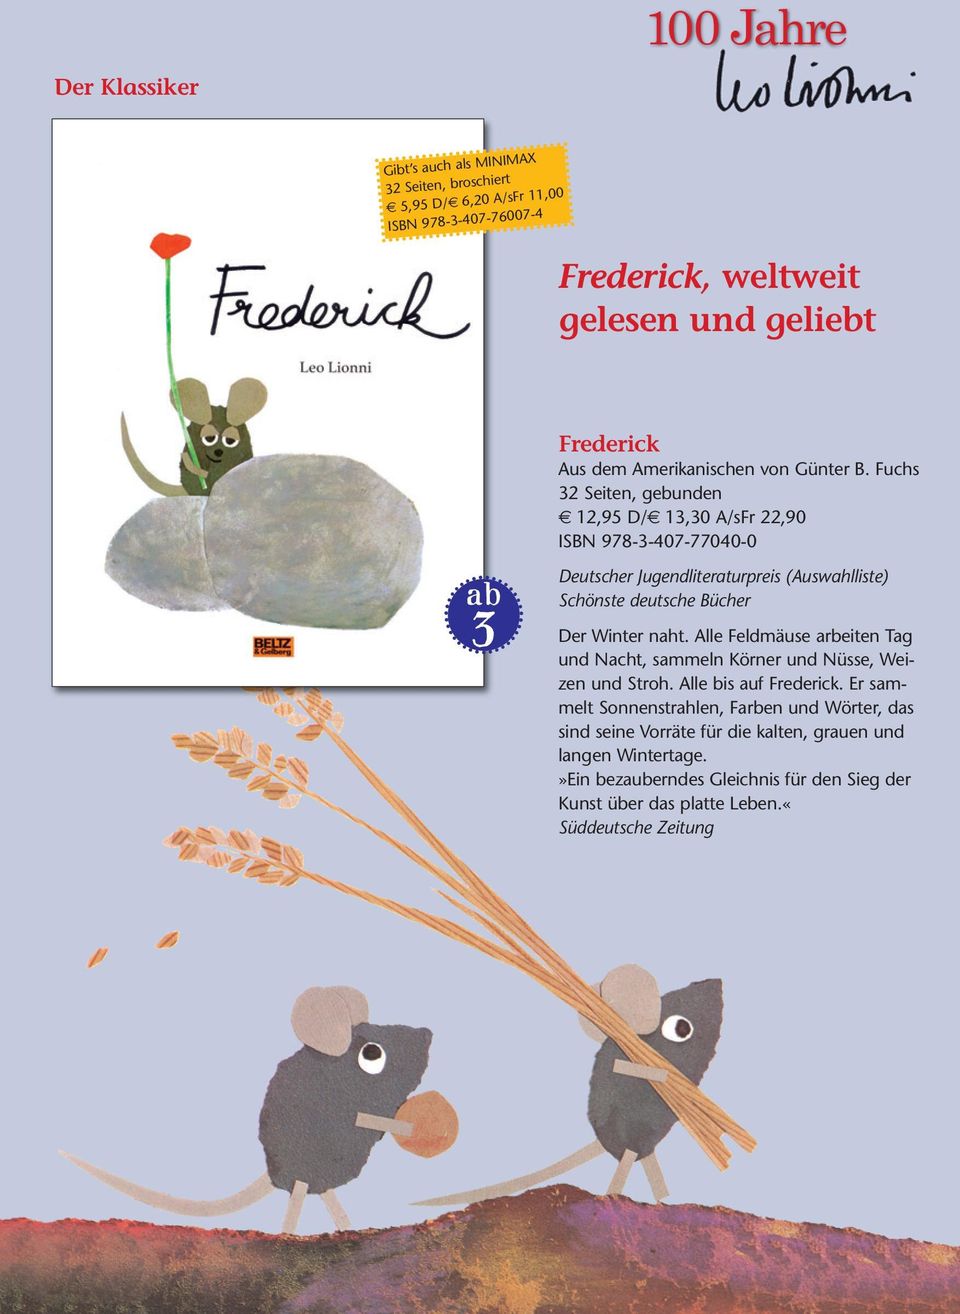 Fuchs 12,95 D/ 13,30 A/sFr 22,90 ISBN 978-3-407-77040-0 _`3 Deutscher Jugendliteraturpreis (Auswahlliste) Schönste deutsche Bücher Der Winter naht.